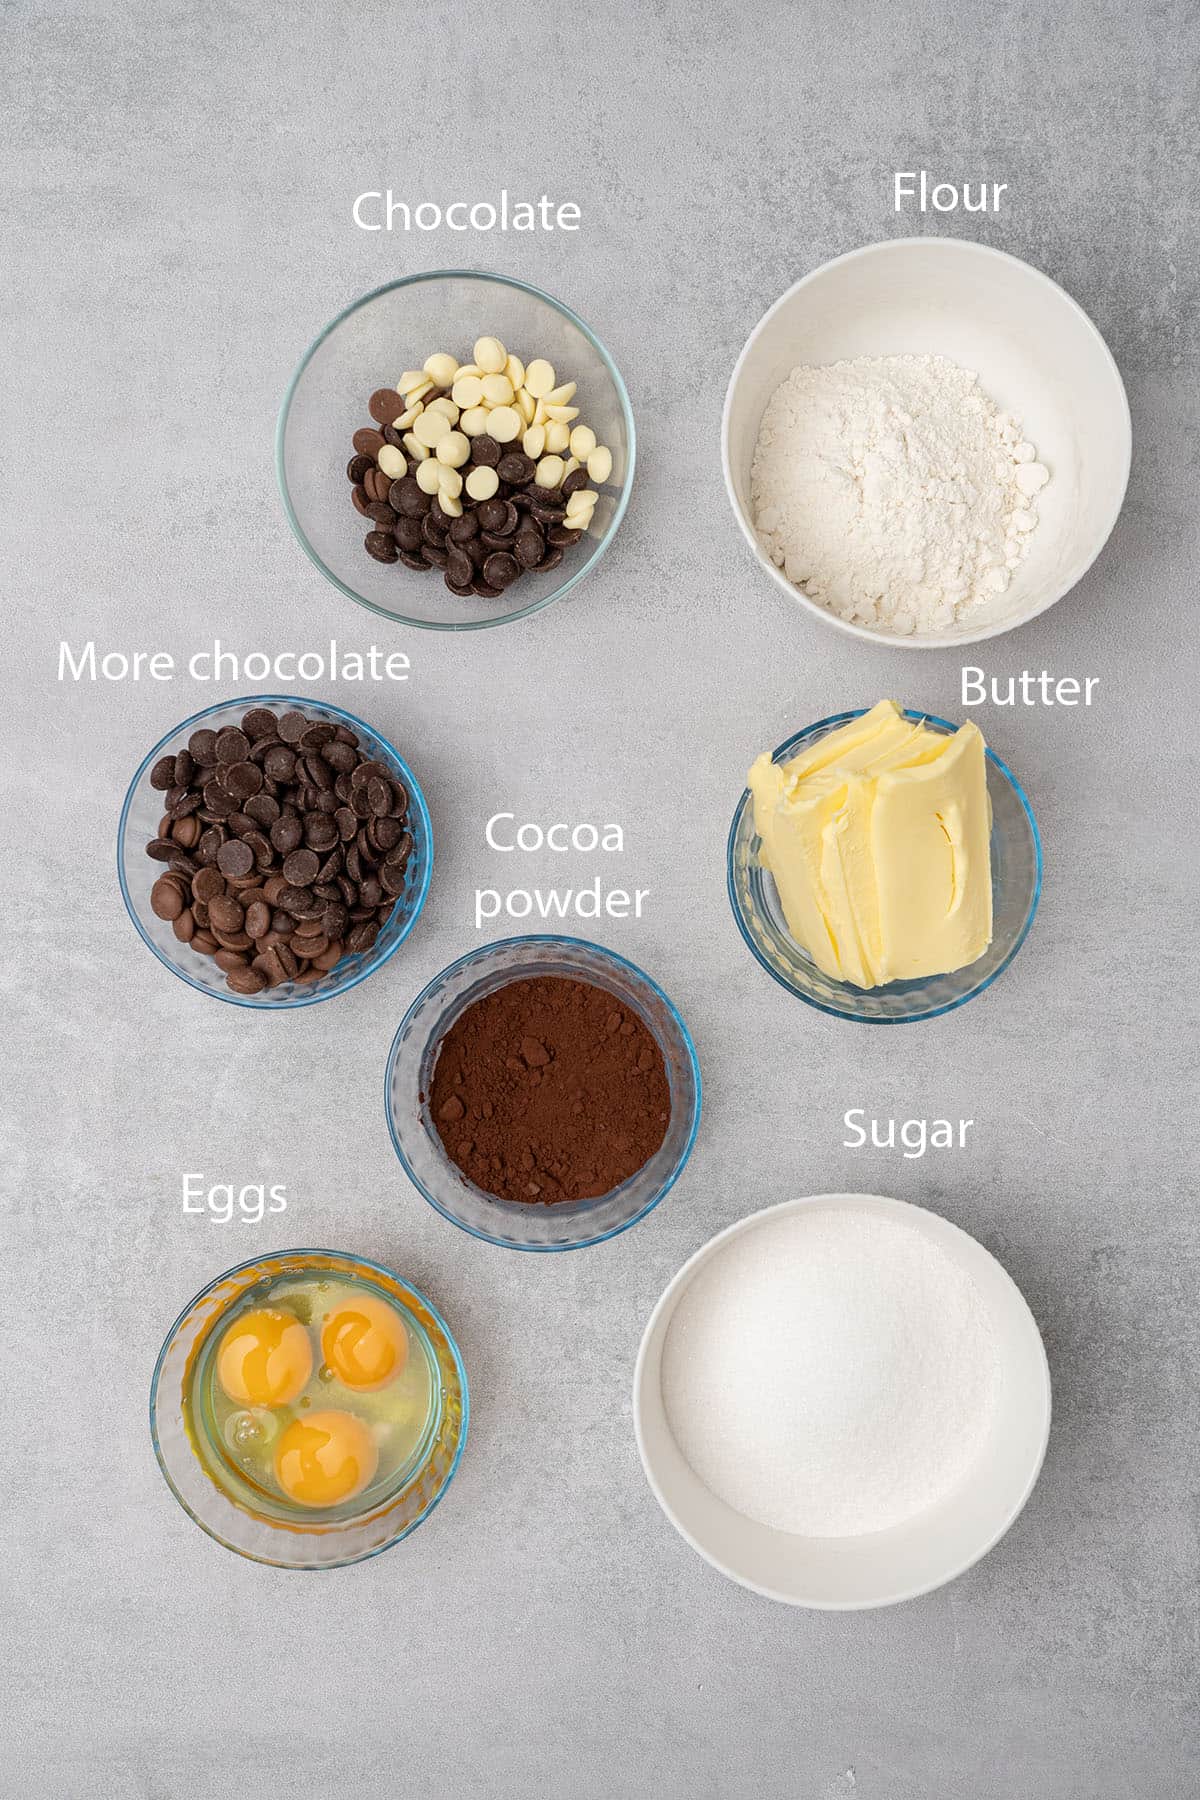 Triple chocolate brownies ingredients.